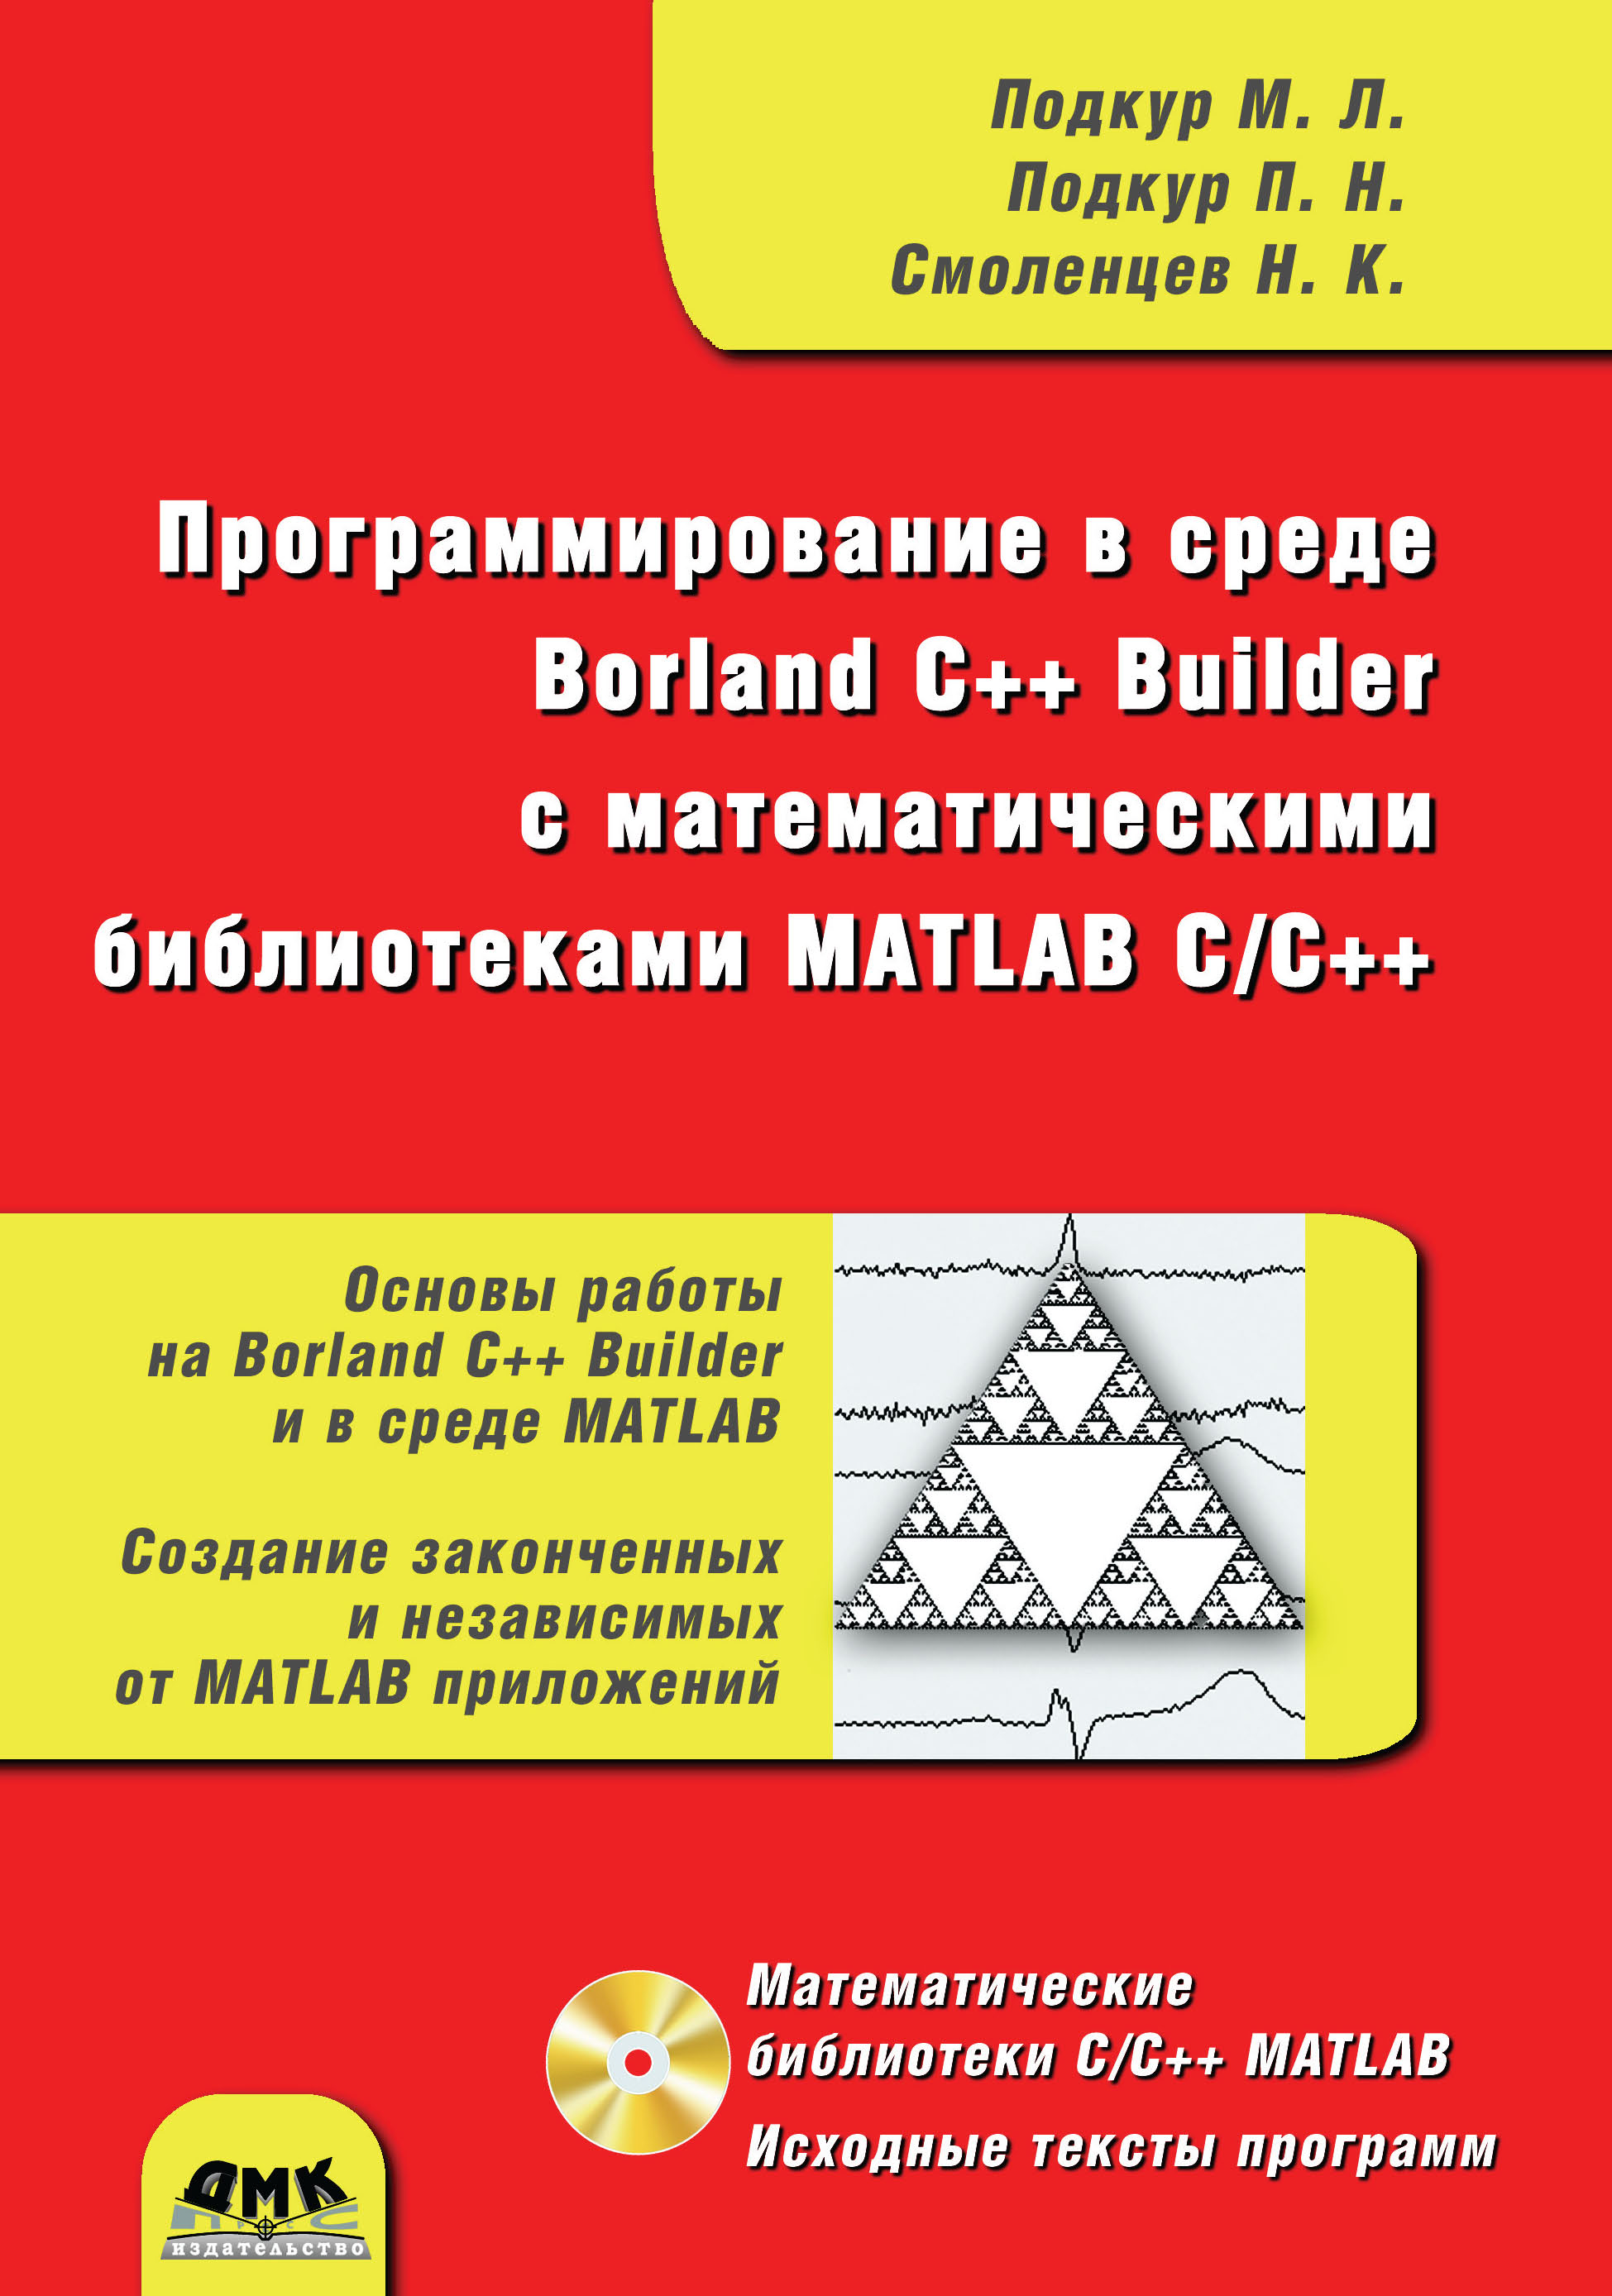 Книга  Программирование в среде Borland C++ Builder с математическими библиотеками MATLAB С/С++ созданная Николай Смоленцев, М. Л. Подкур, П. Н. Подкур может относится к жанру программирование. Стоимость электронной книги Программирование в среде Borland C++ Builder с математическими библиотеками MATLAB С/С++ с идентификатором 45670064 составляет 399.00 руб.